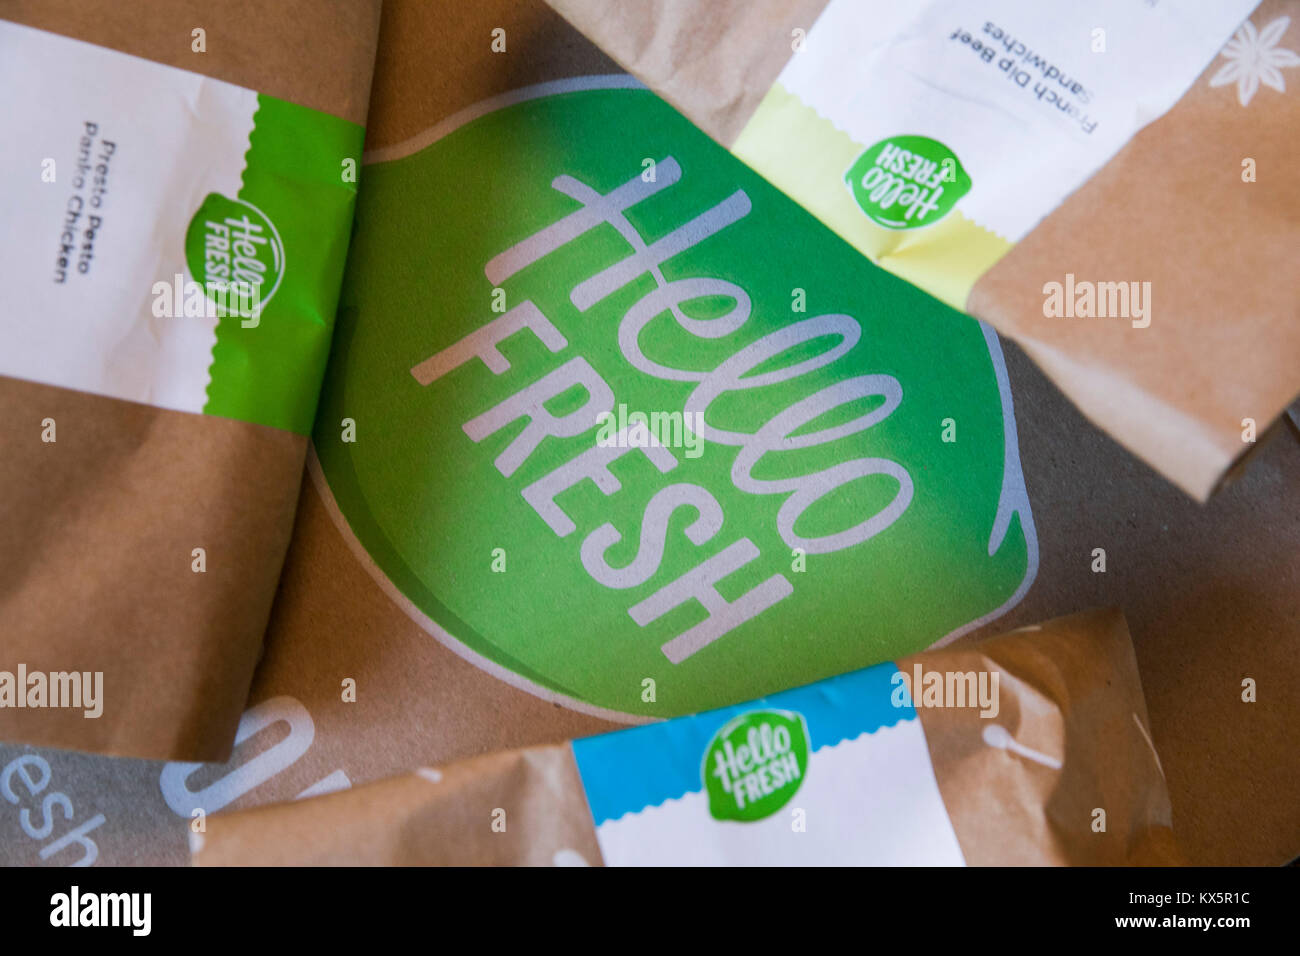 Der Inhalt eines HelloFresh meal delivery Kits, die am 3. Januar 2018 gesehen. Stockfoto